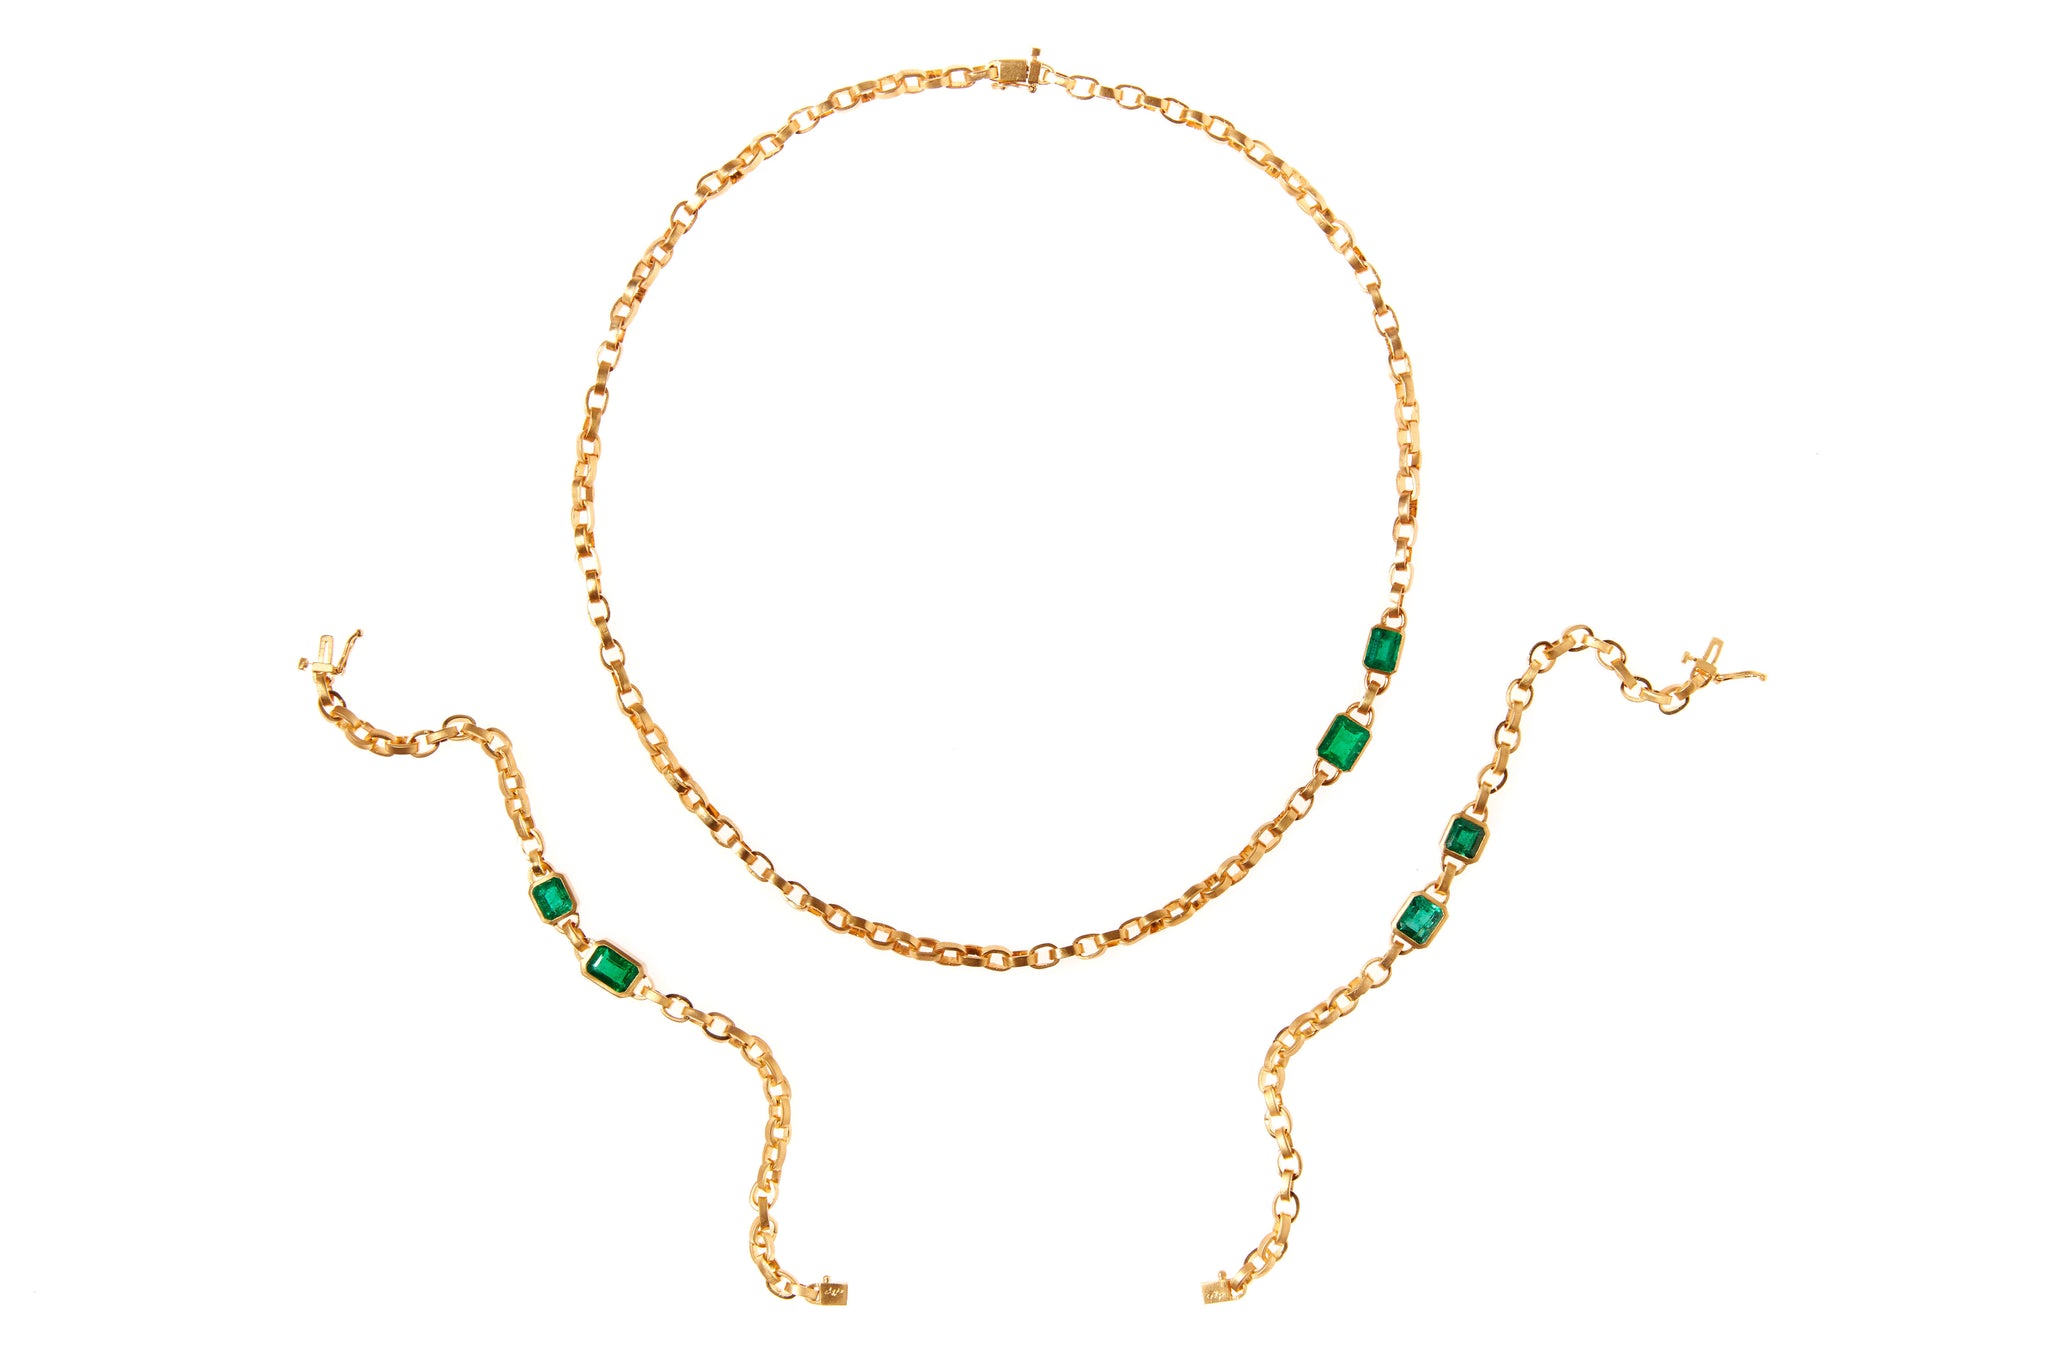 darius jewels hand made fine jewelry double emerald signature chain colombian 18k yellow gold darius khonsary